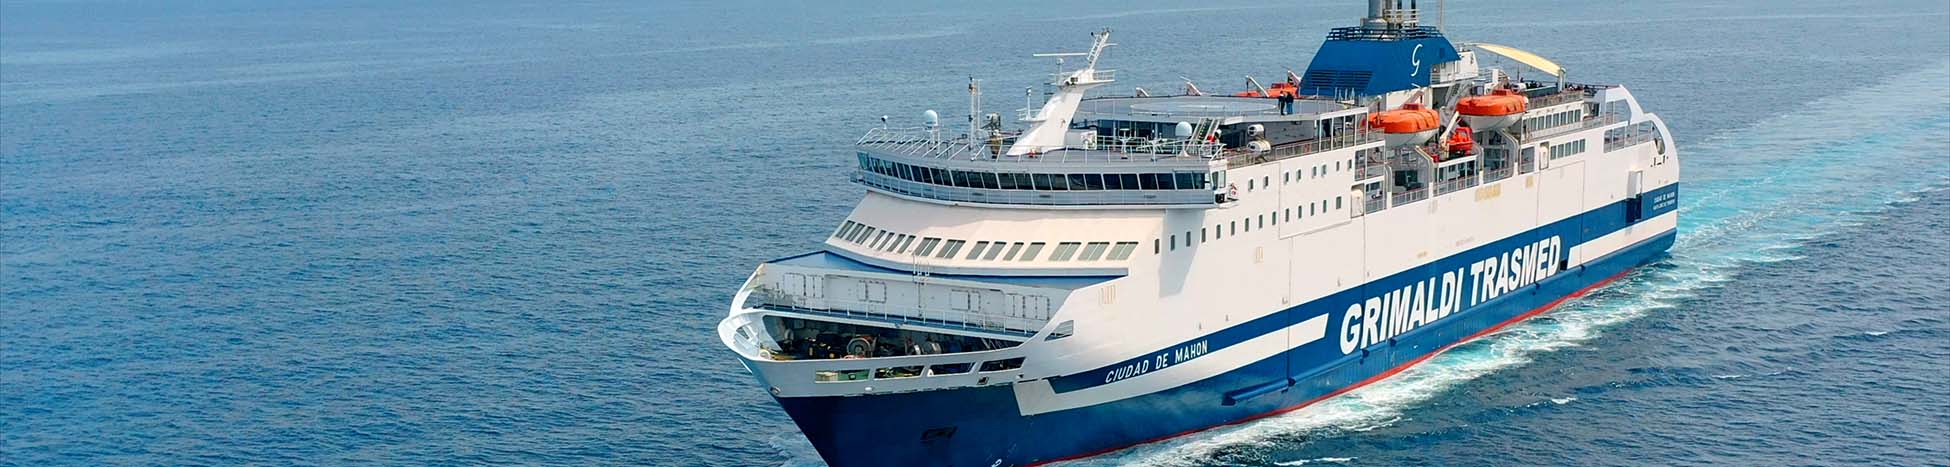 Imagen recurso del puerto de destino Barcelona para la ruta en ferry Menorca (Mahón) - Barcelona